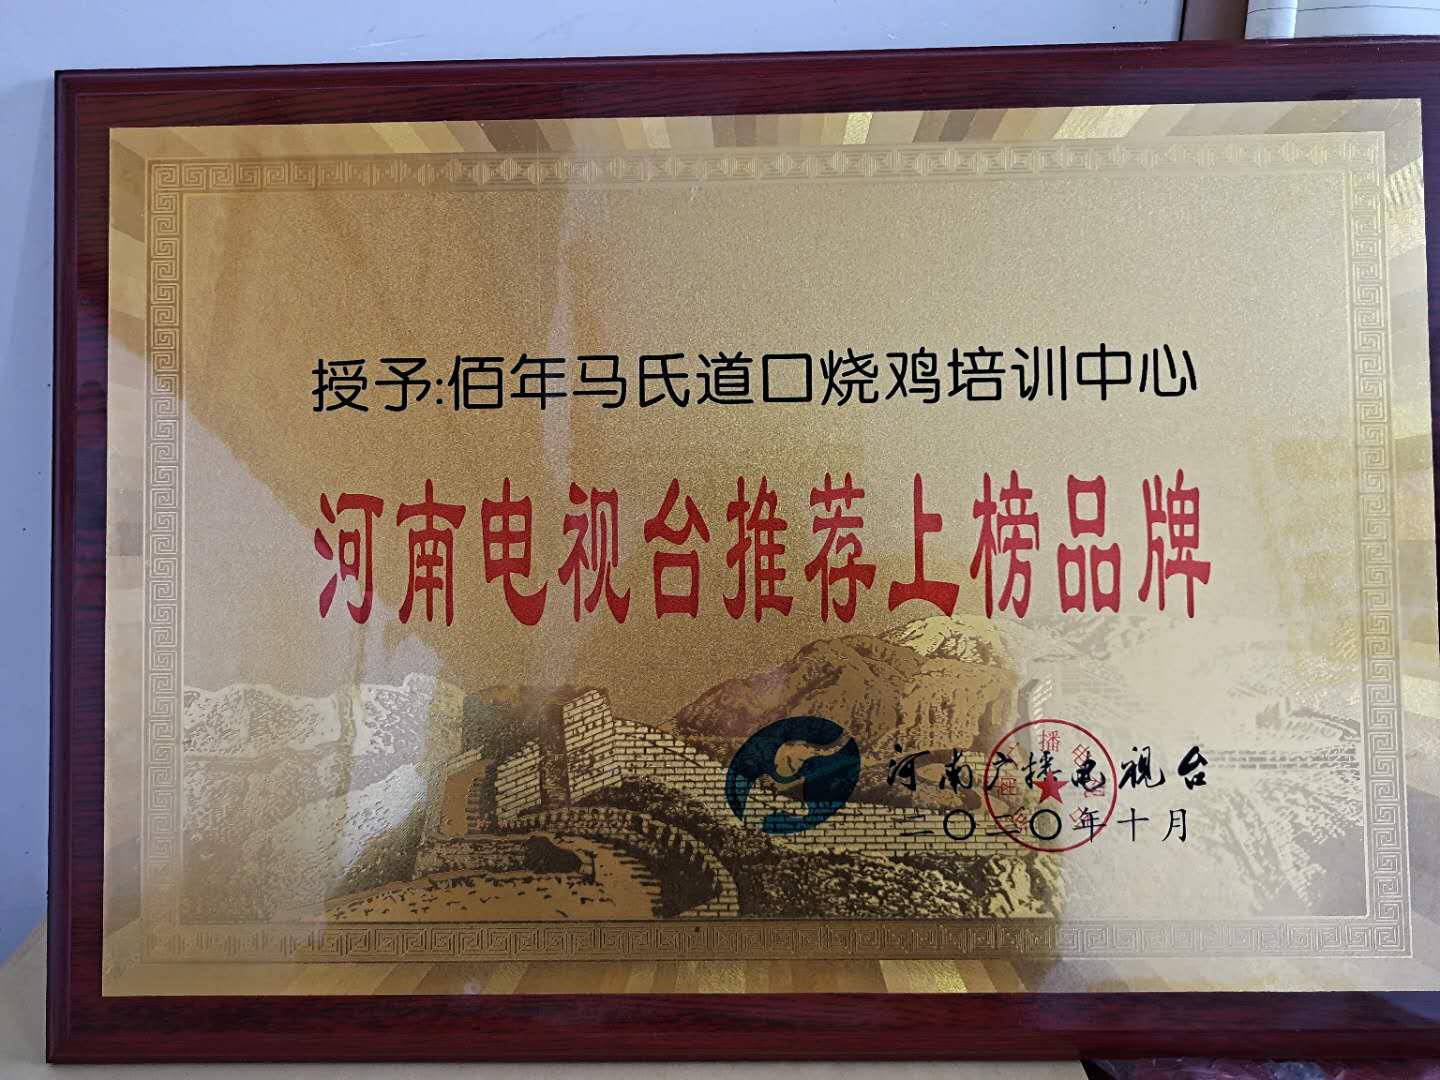 河南电视台推荐上榜品牌 百年马氏道口烧鸡培训中心 资质荣誉